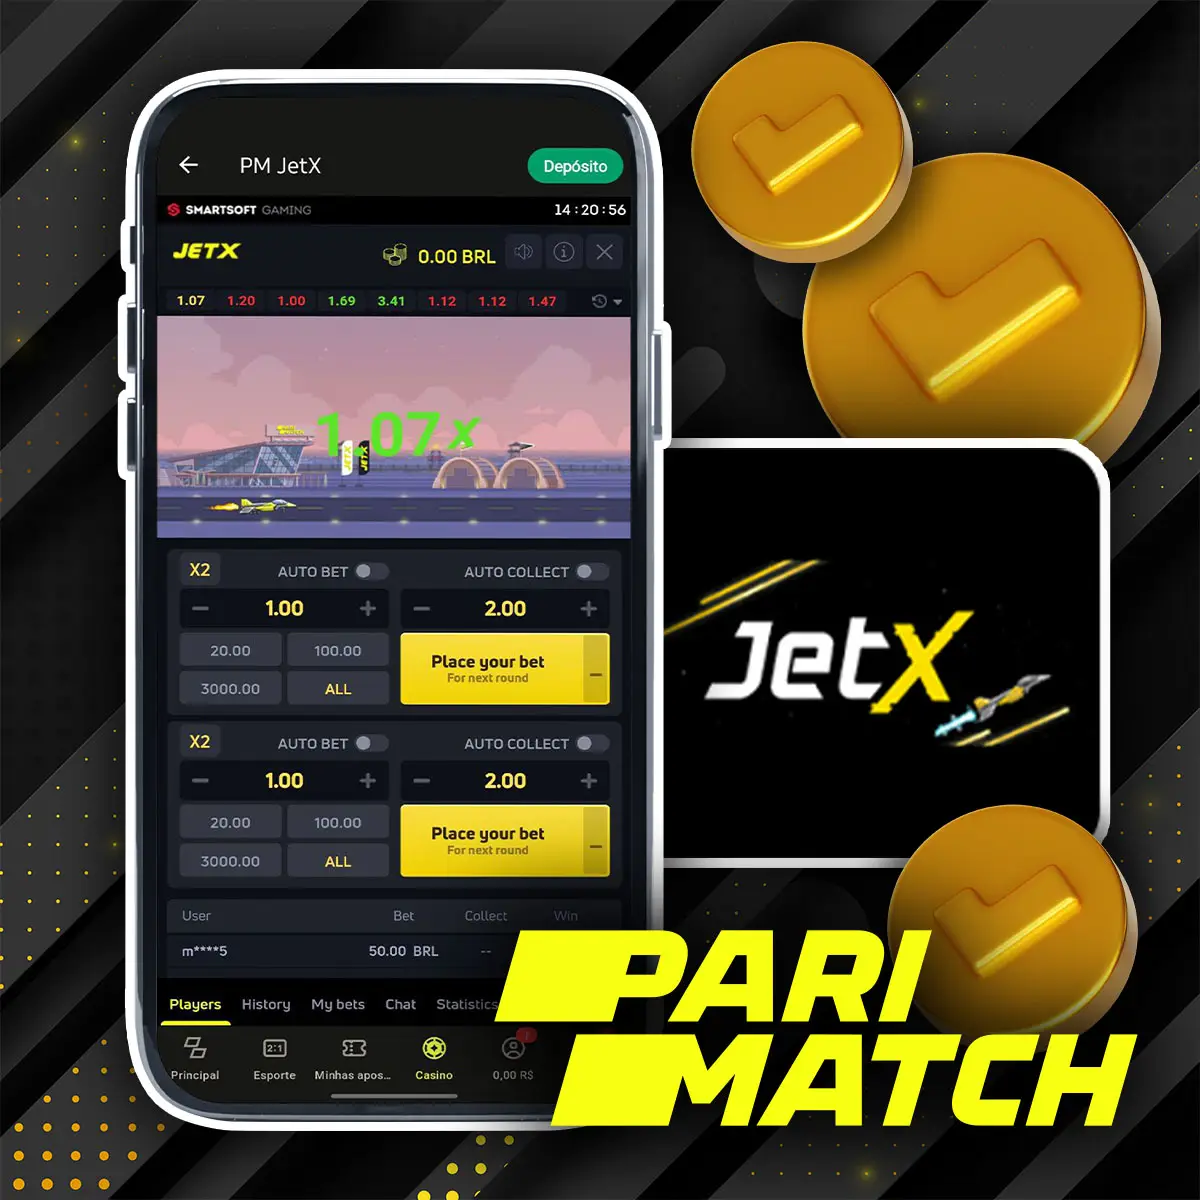 Quais são as principais características do Parimatch JetX